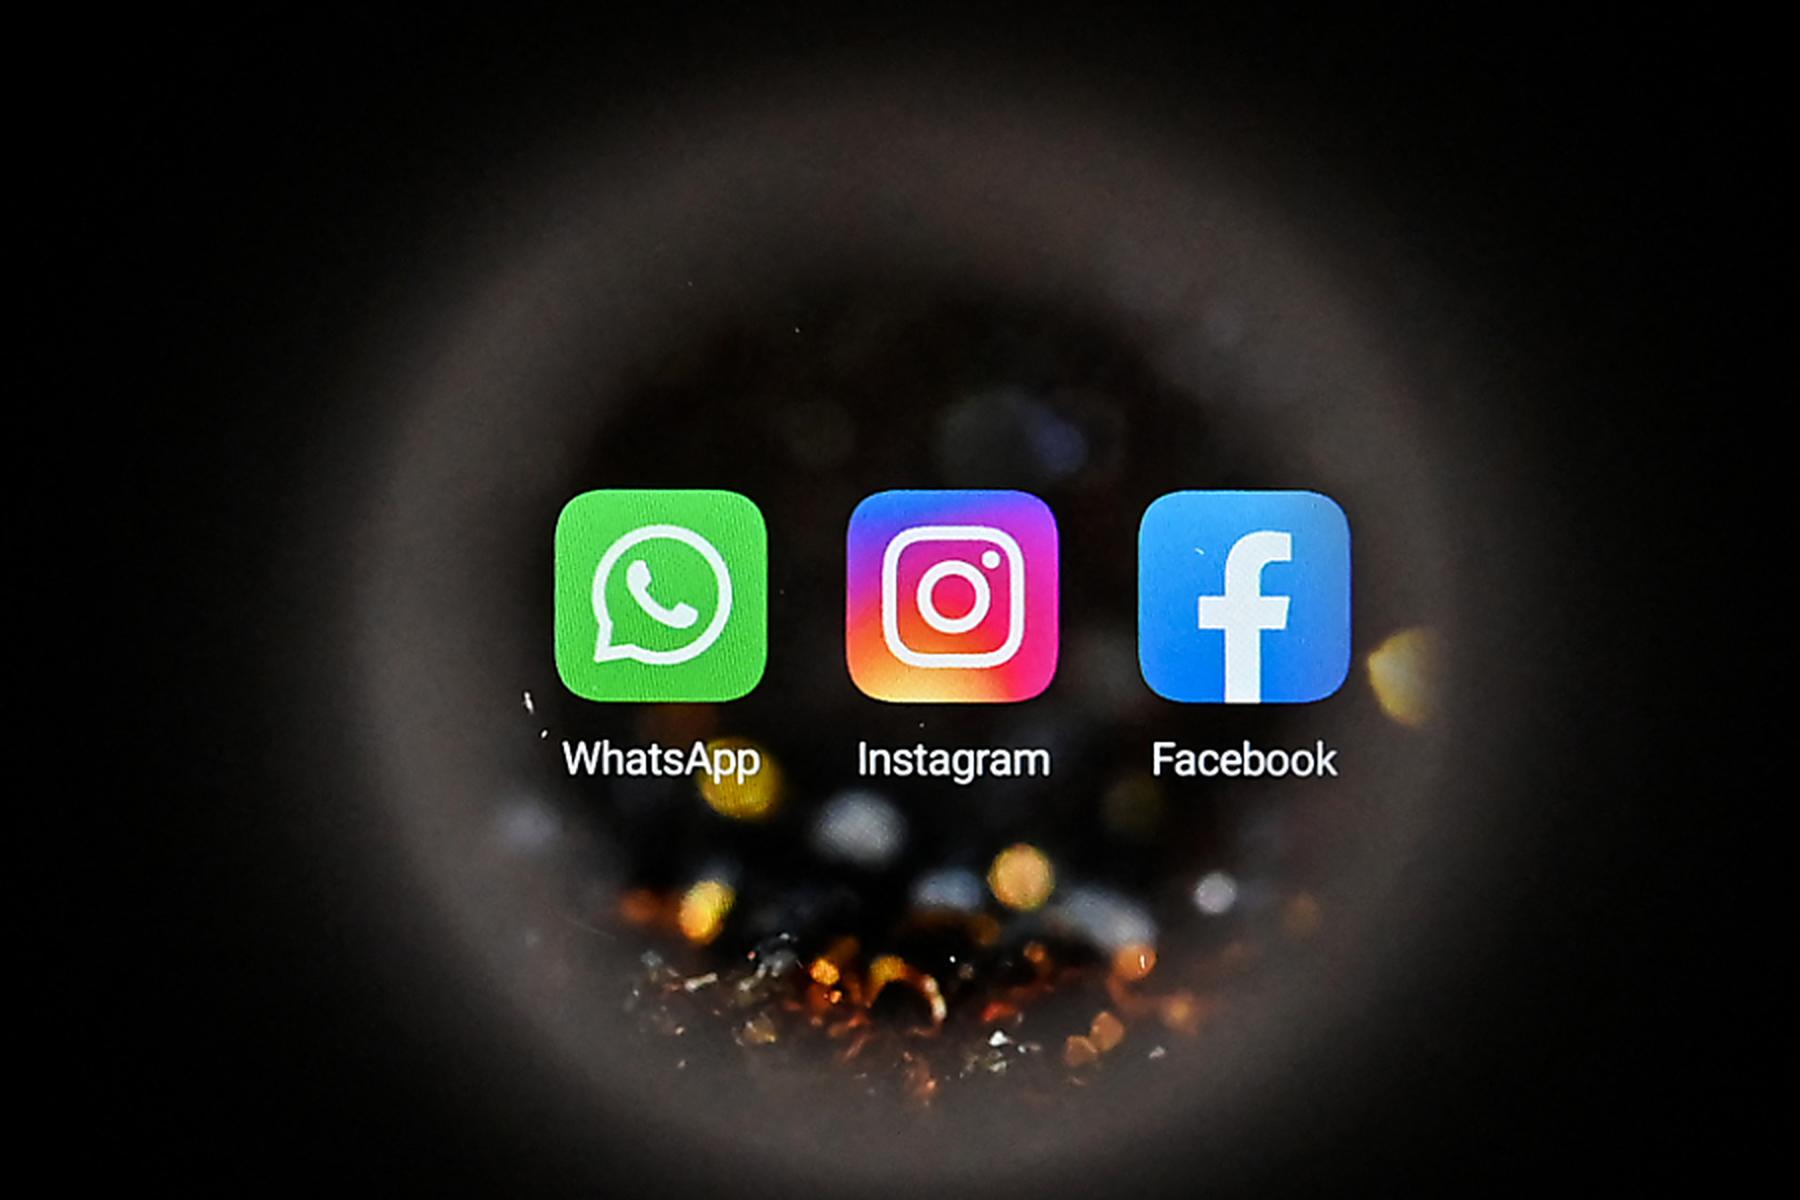 Probleme seit 20 Uhr: Störungen und Ausfälle bei WhatsApp und Instagram gemeldet 